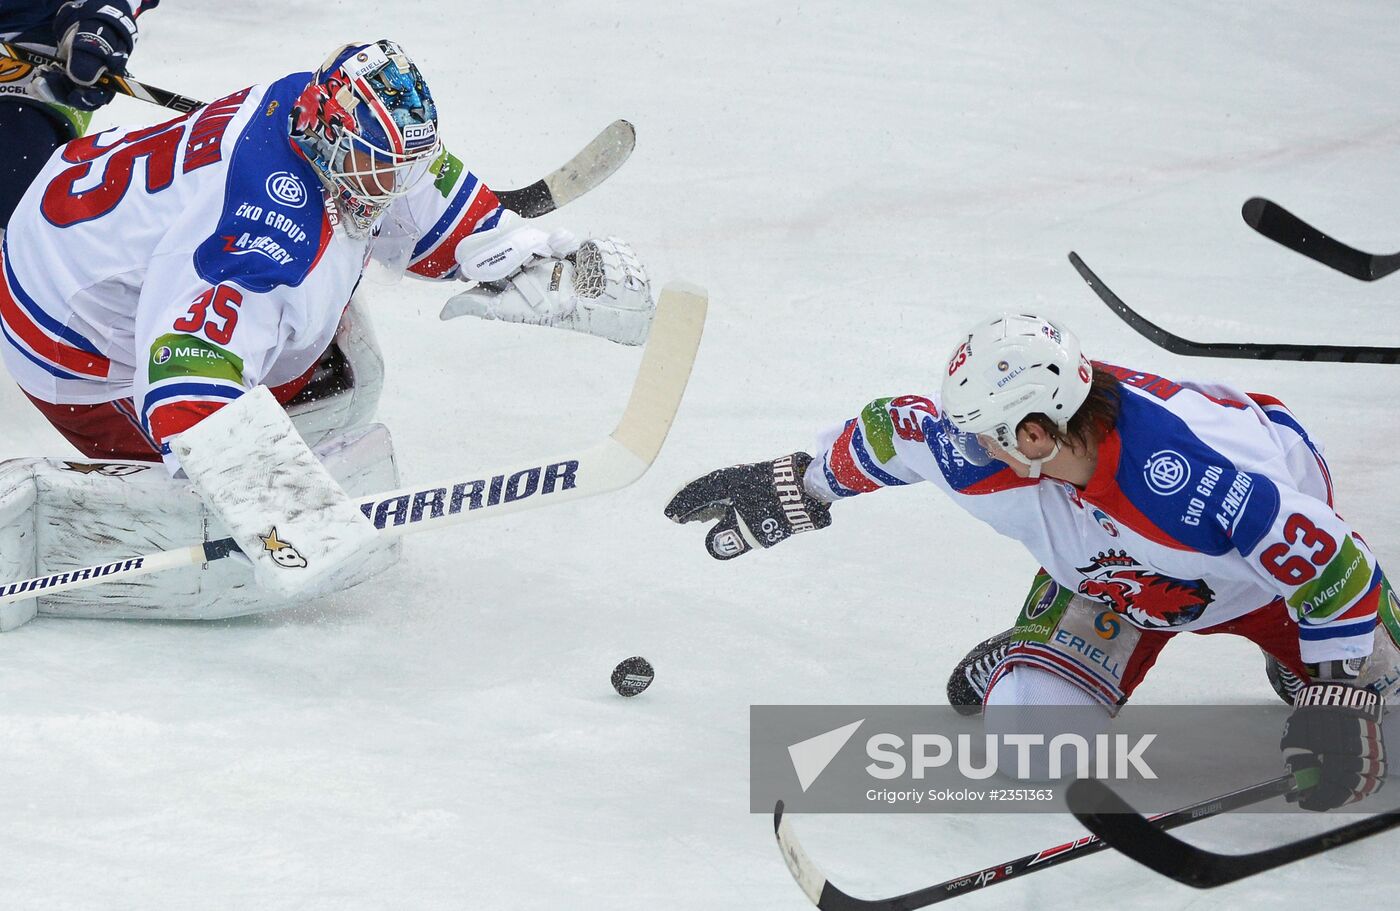 Kontinental Hockey League. Torpedo Nizhny Novgorod vs. Lev Praha